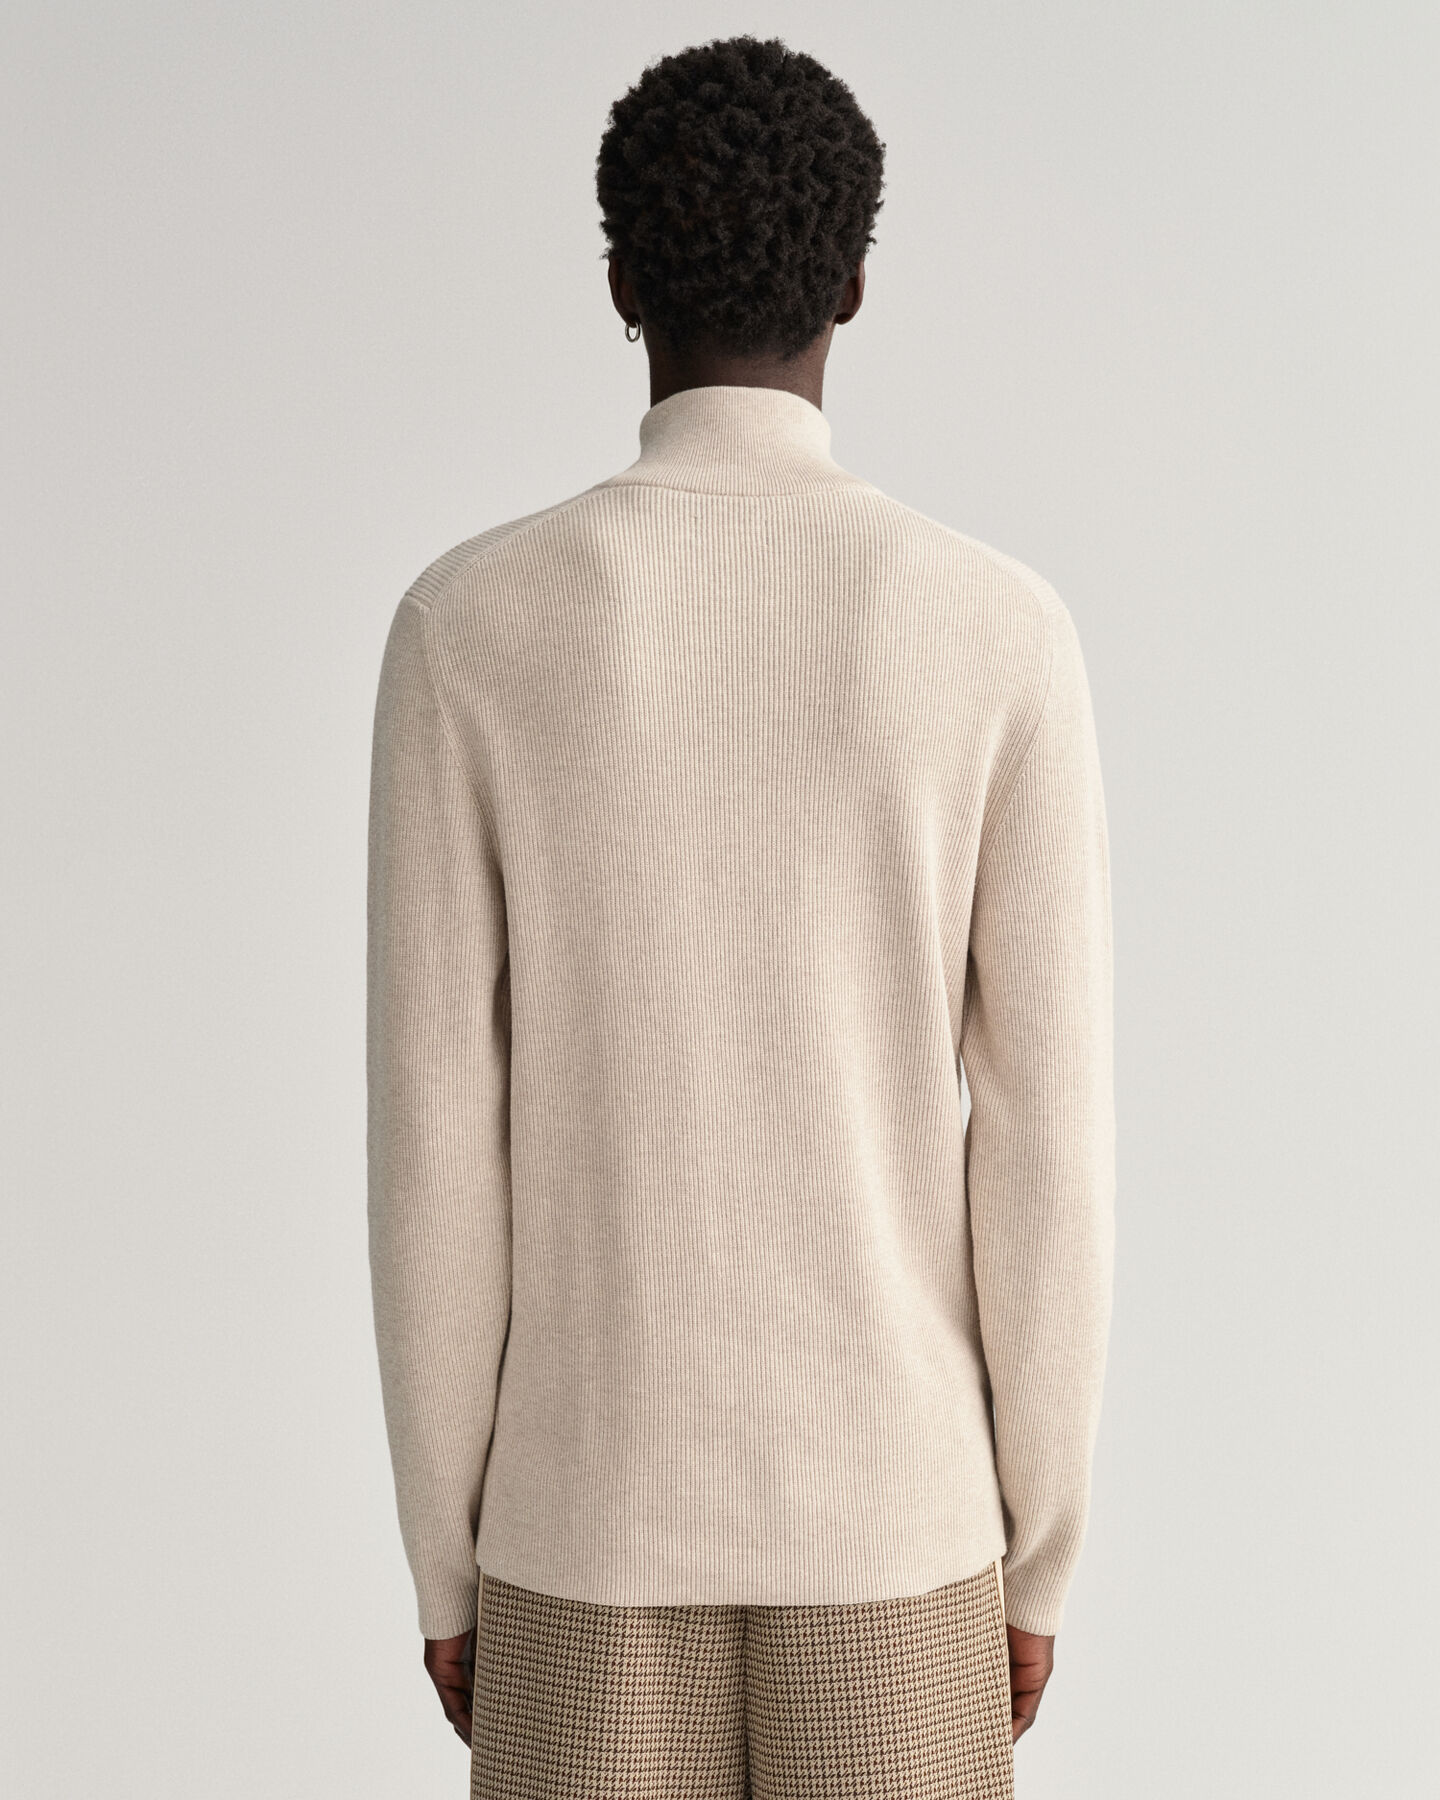 GANT Dark Purple Cotton Triangle Texture Half Zip Sweater Pullover Size M